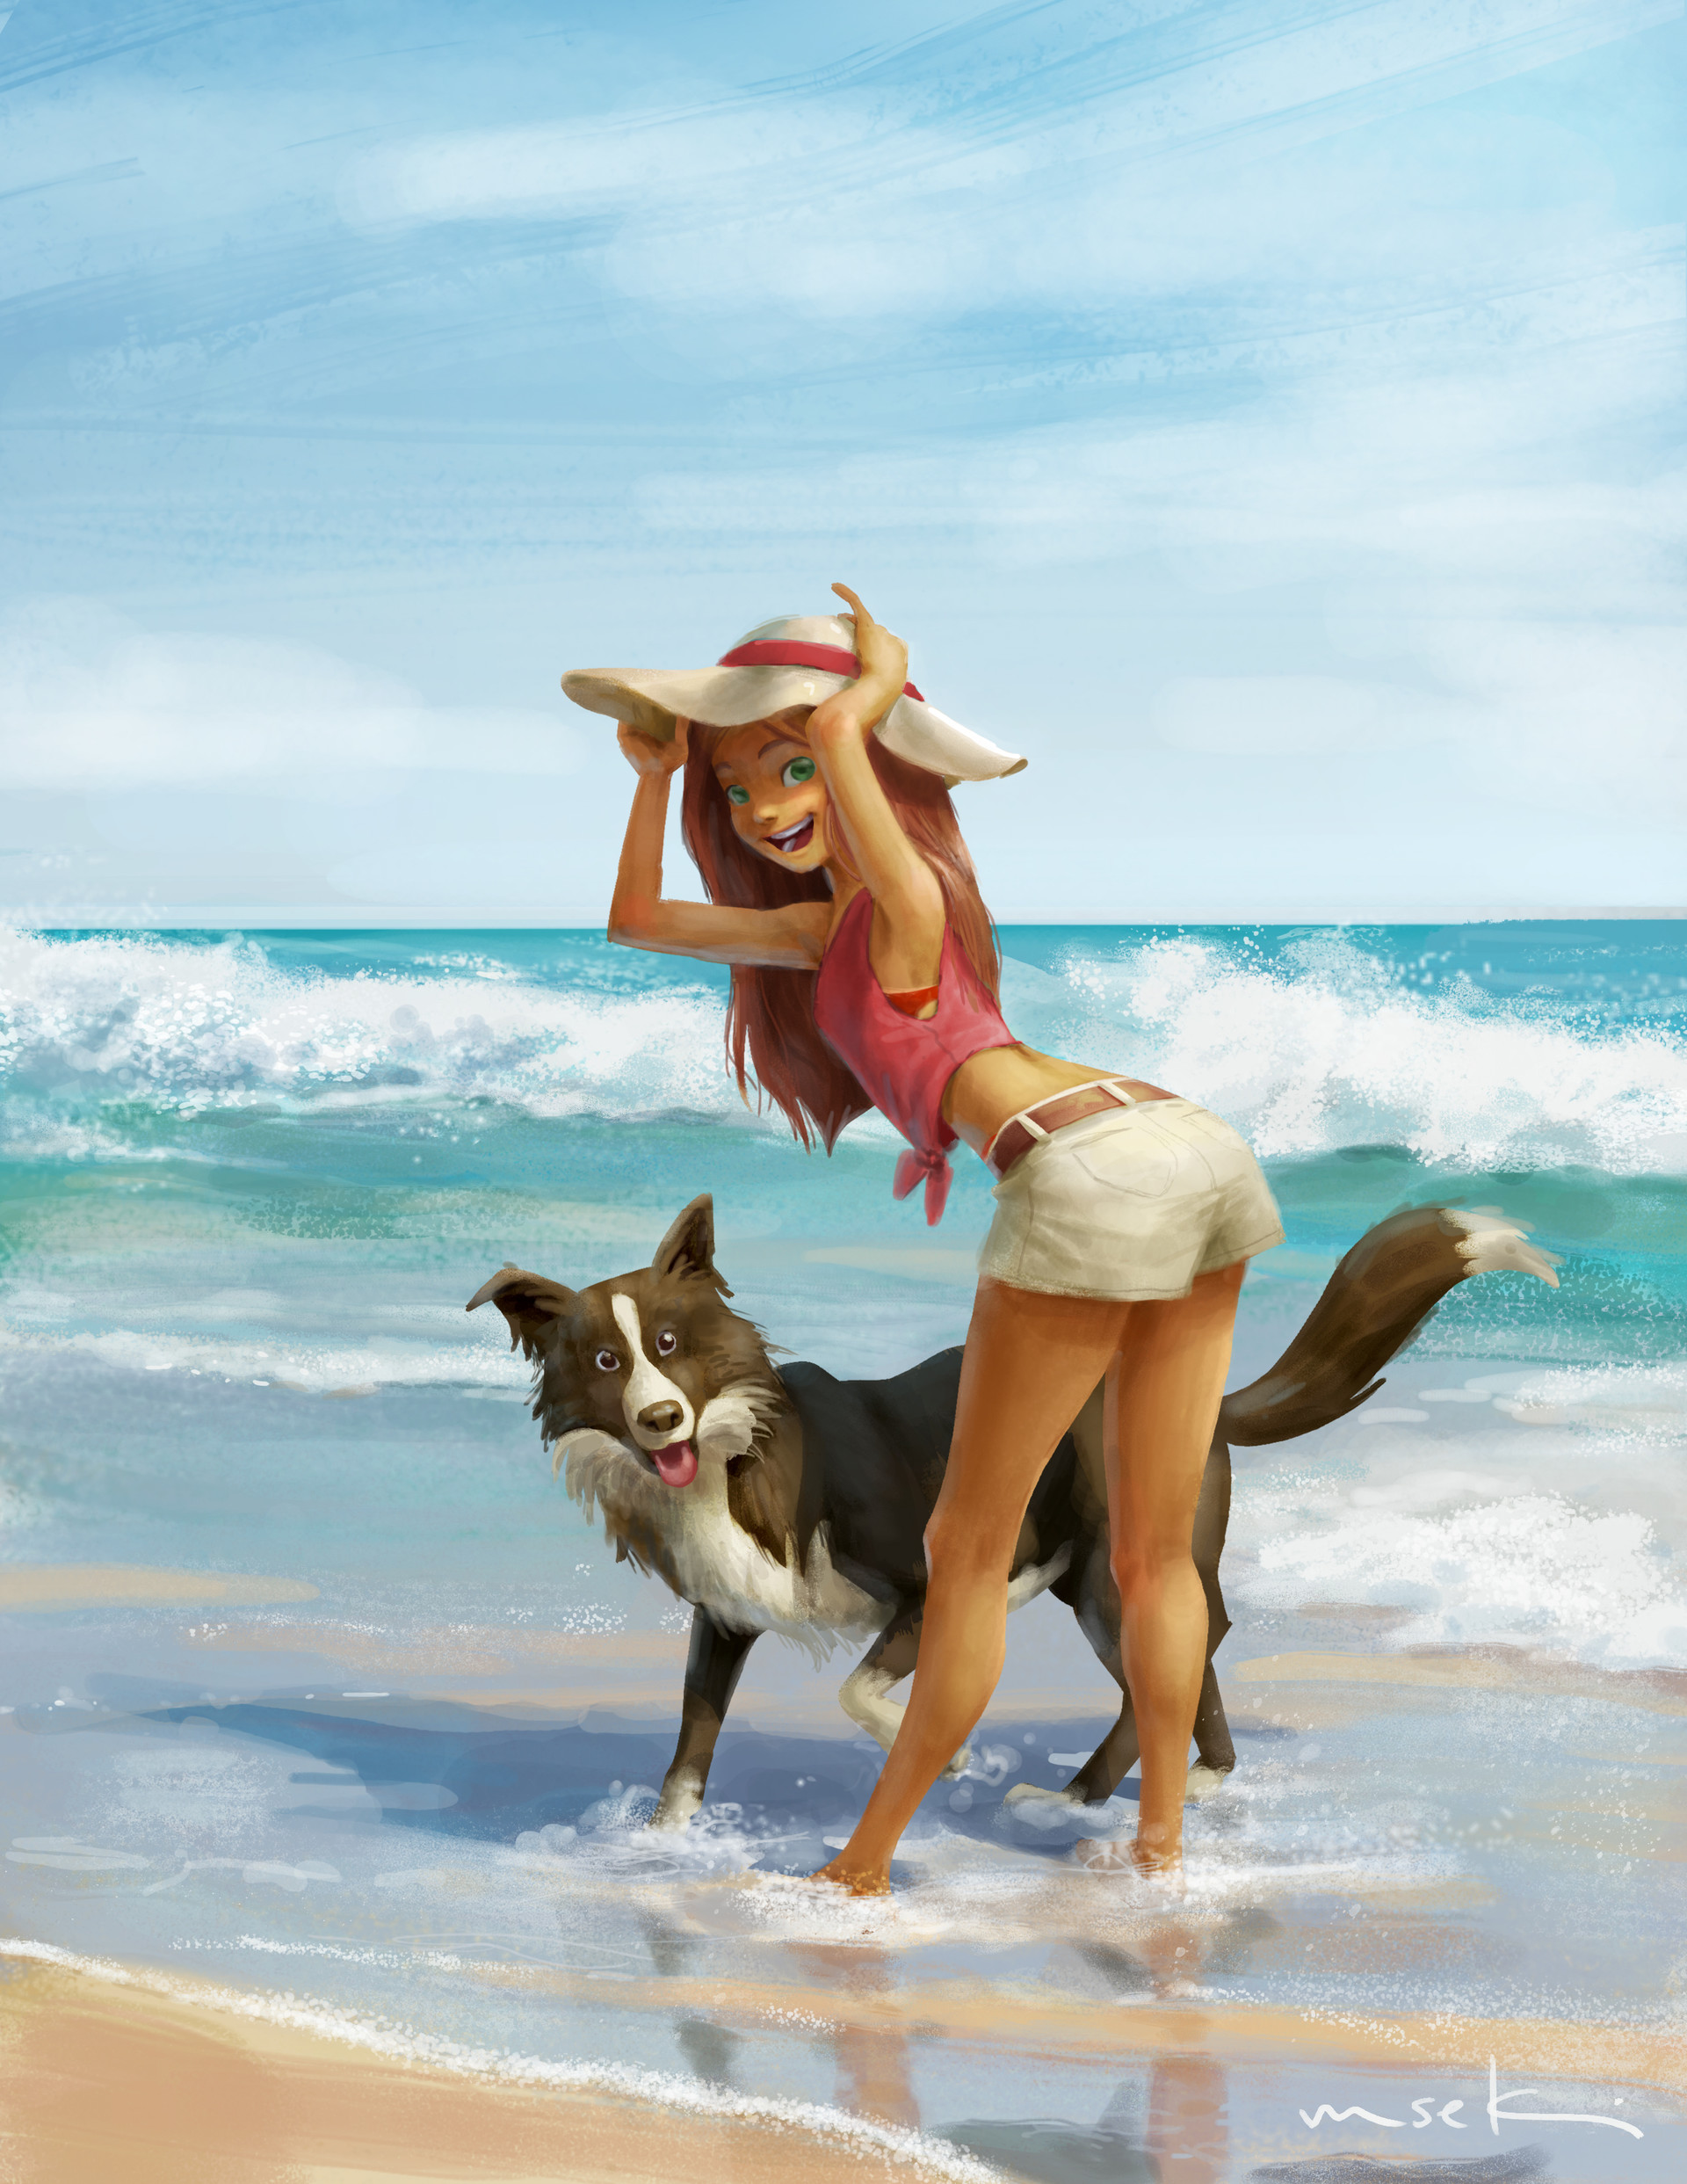 Фото Девушка с собакой на пляже, by Masae Seki